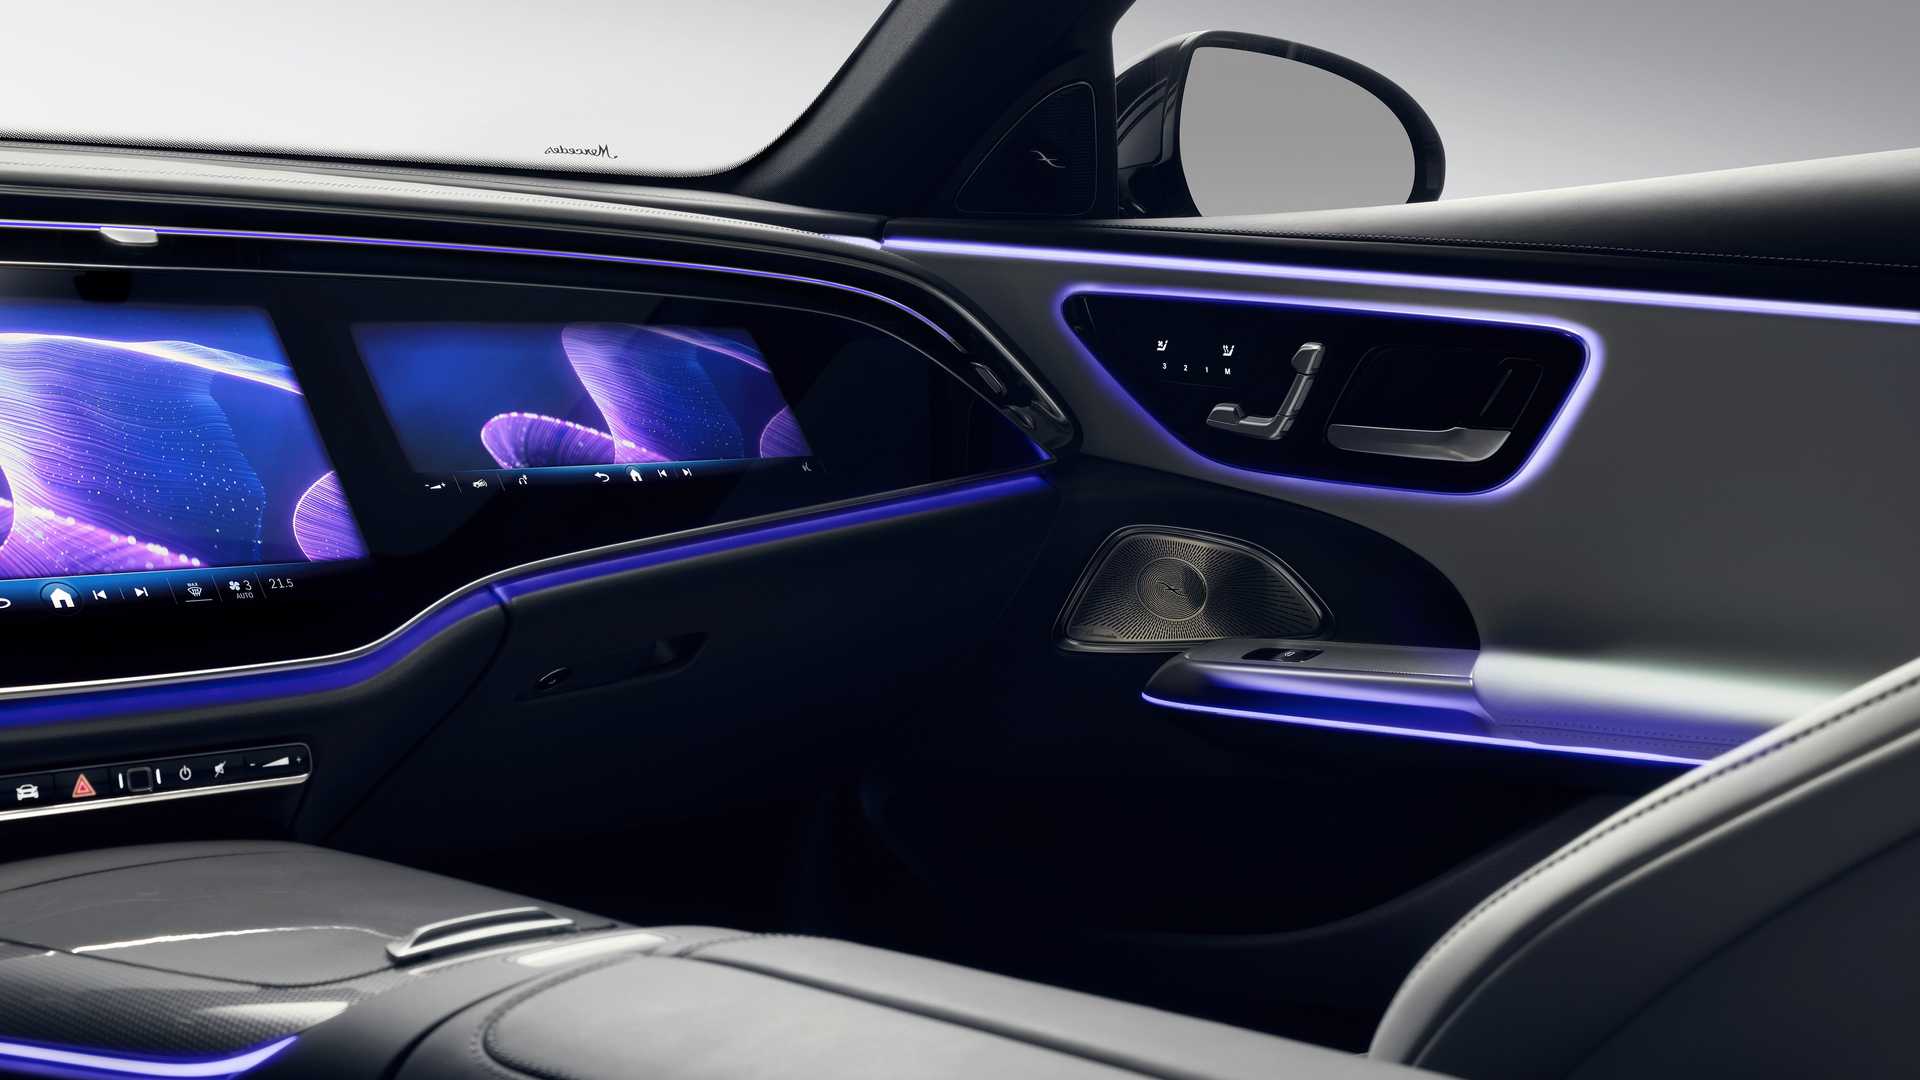 Mercedes-Benz công bố sớm nội thất E-Class mới với màn hình khổng lồ, TikTok và camera selfie mặc định - Ảnh 10.